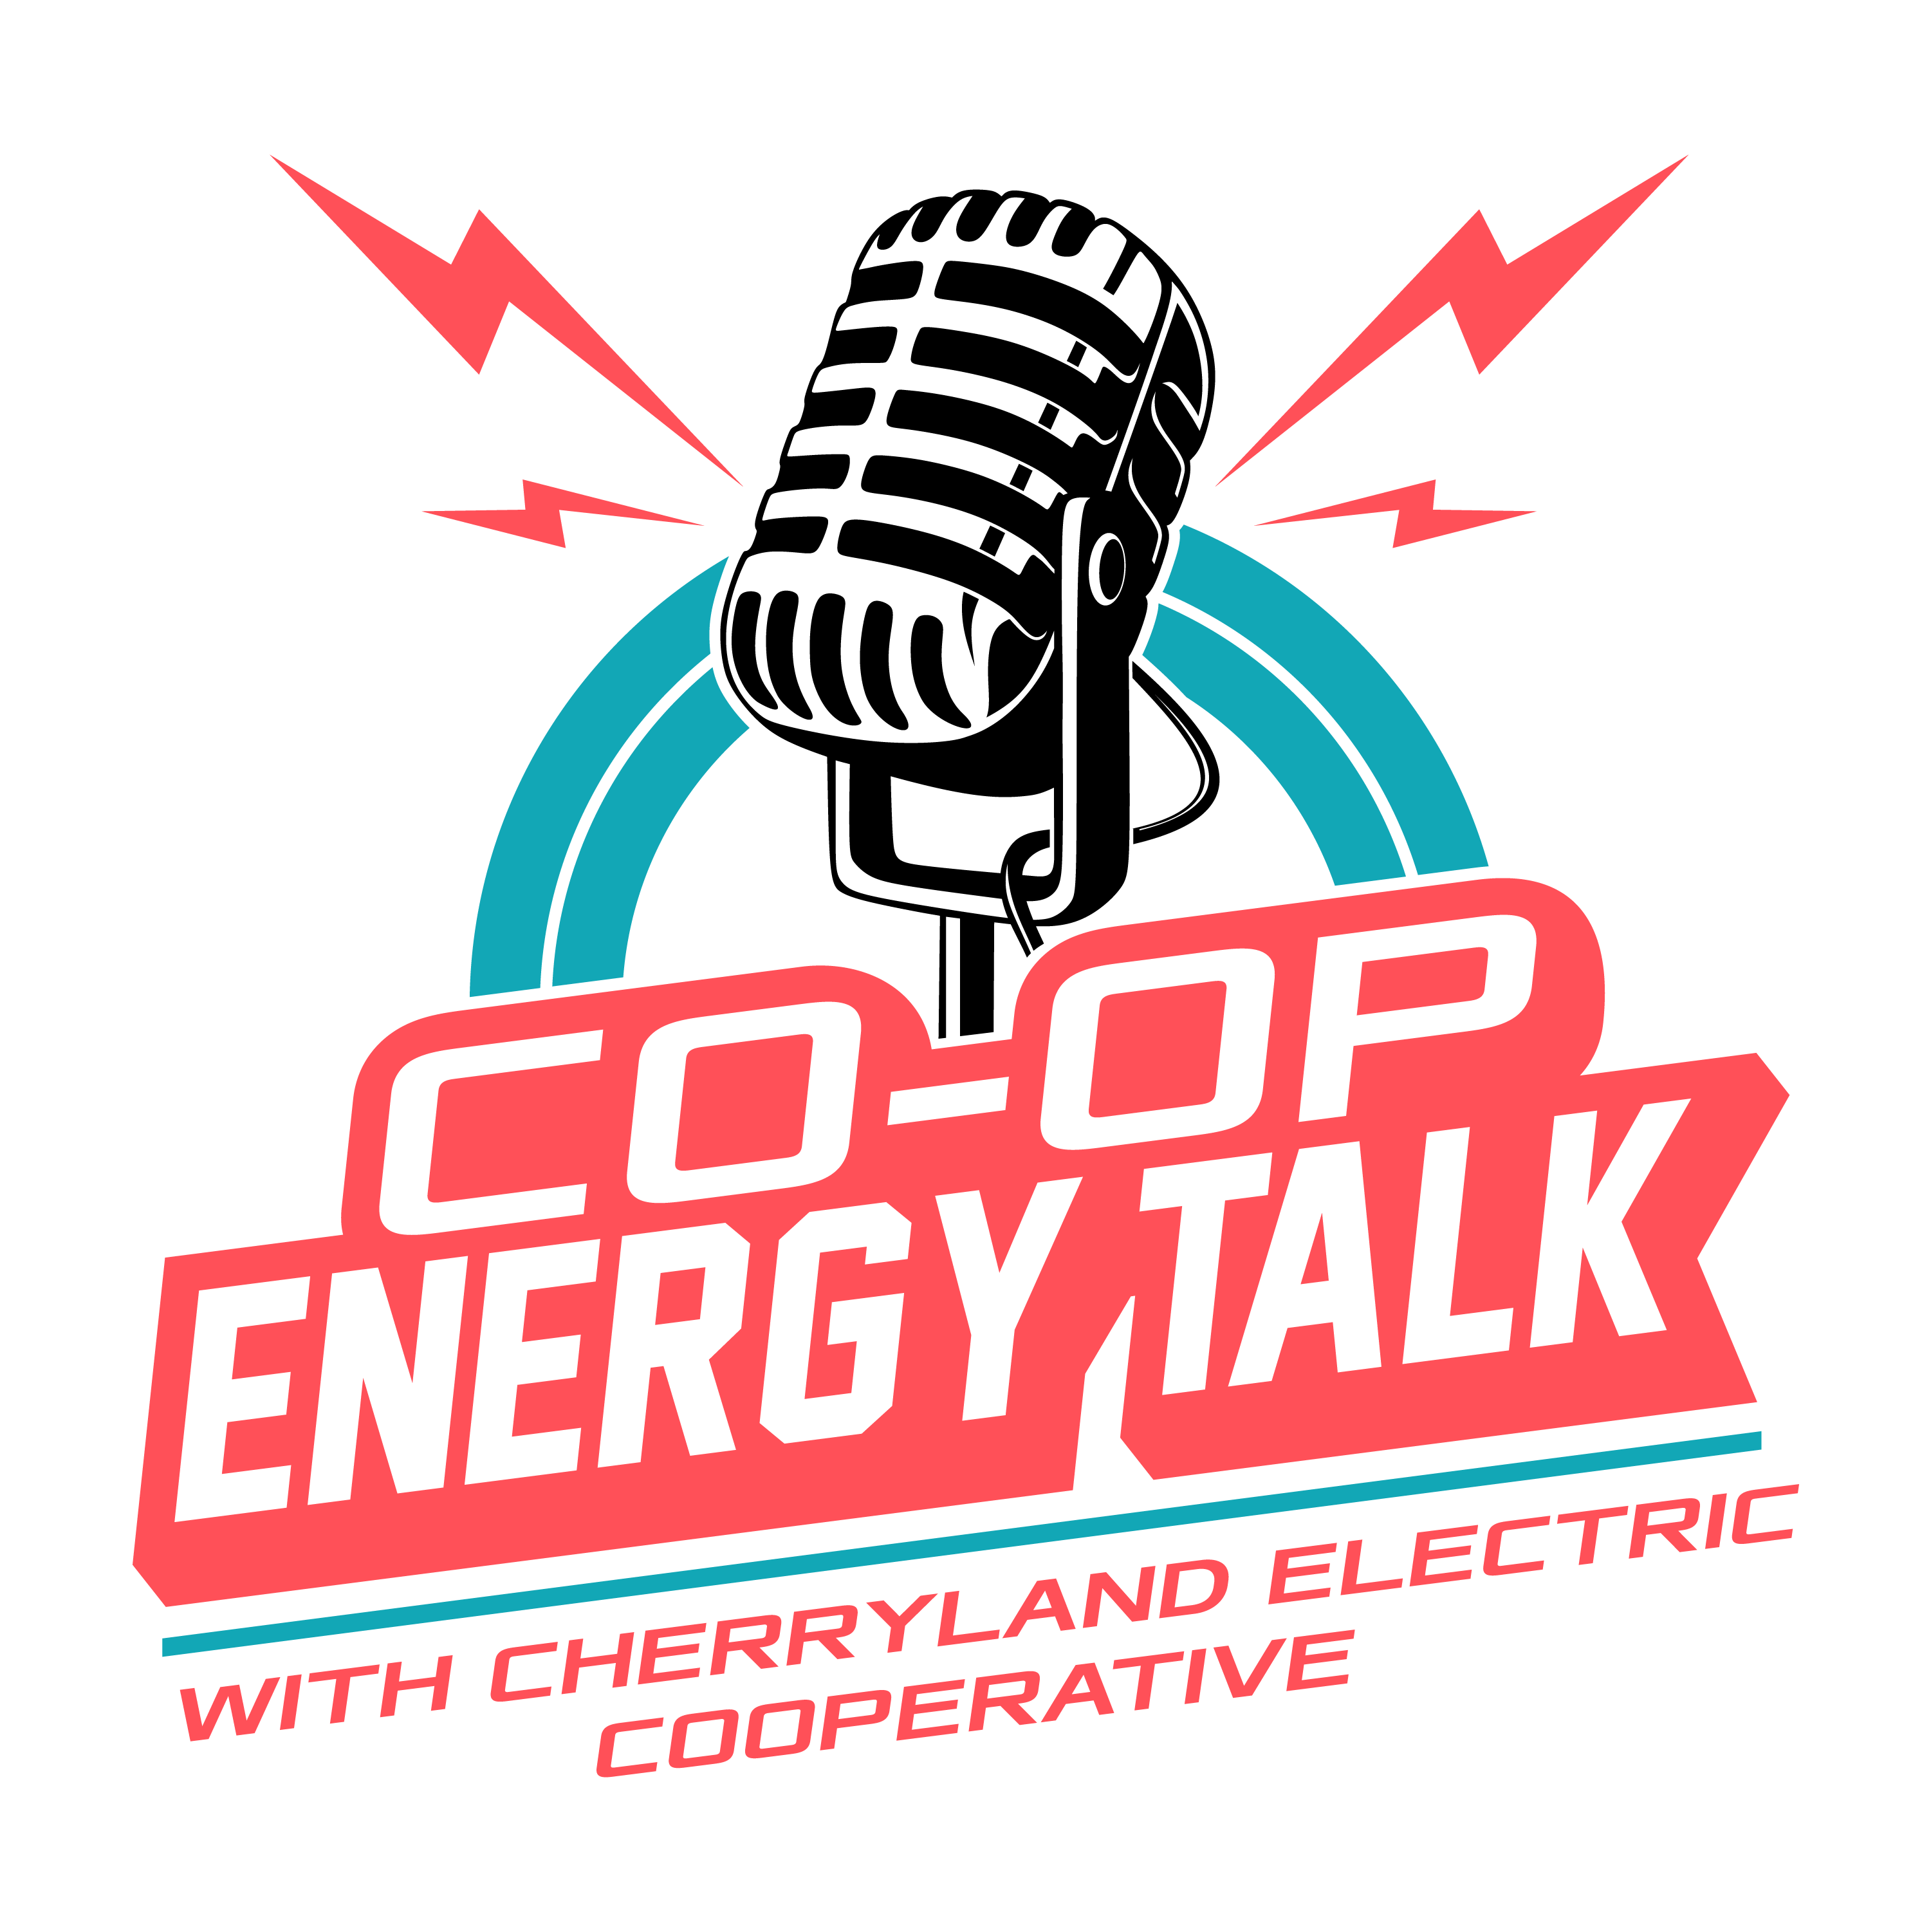 Co-op Energy Talk